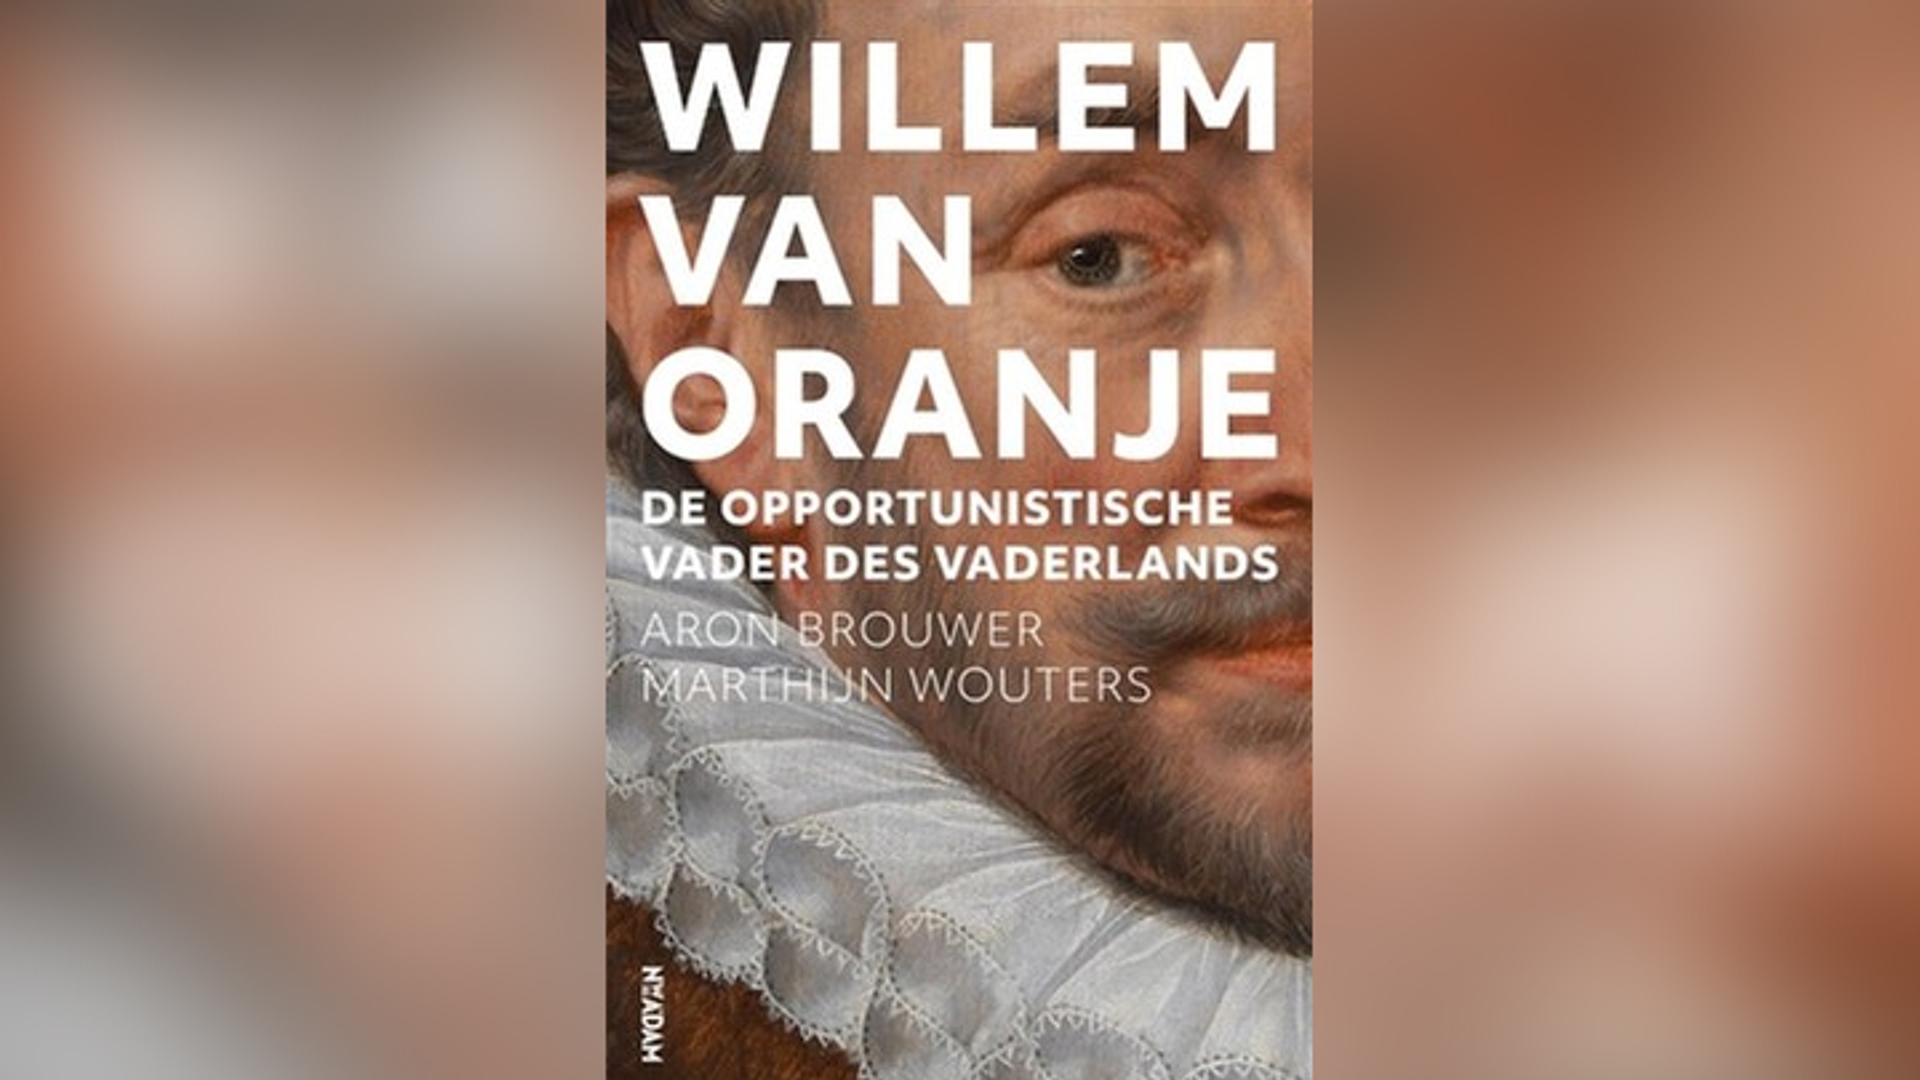 Boek Willem van Oranje